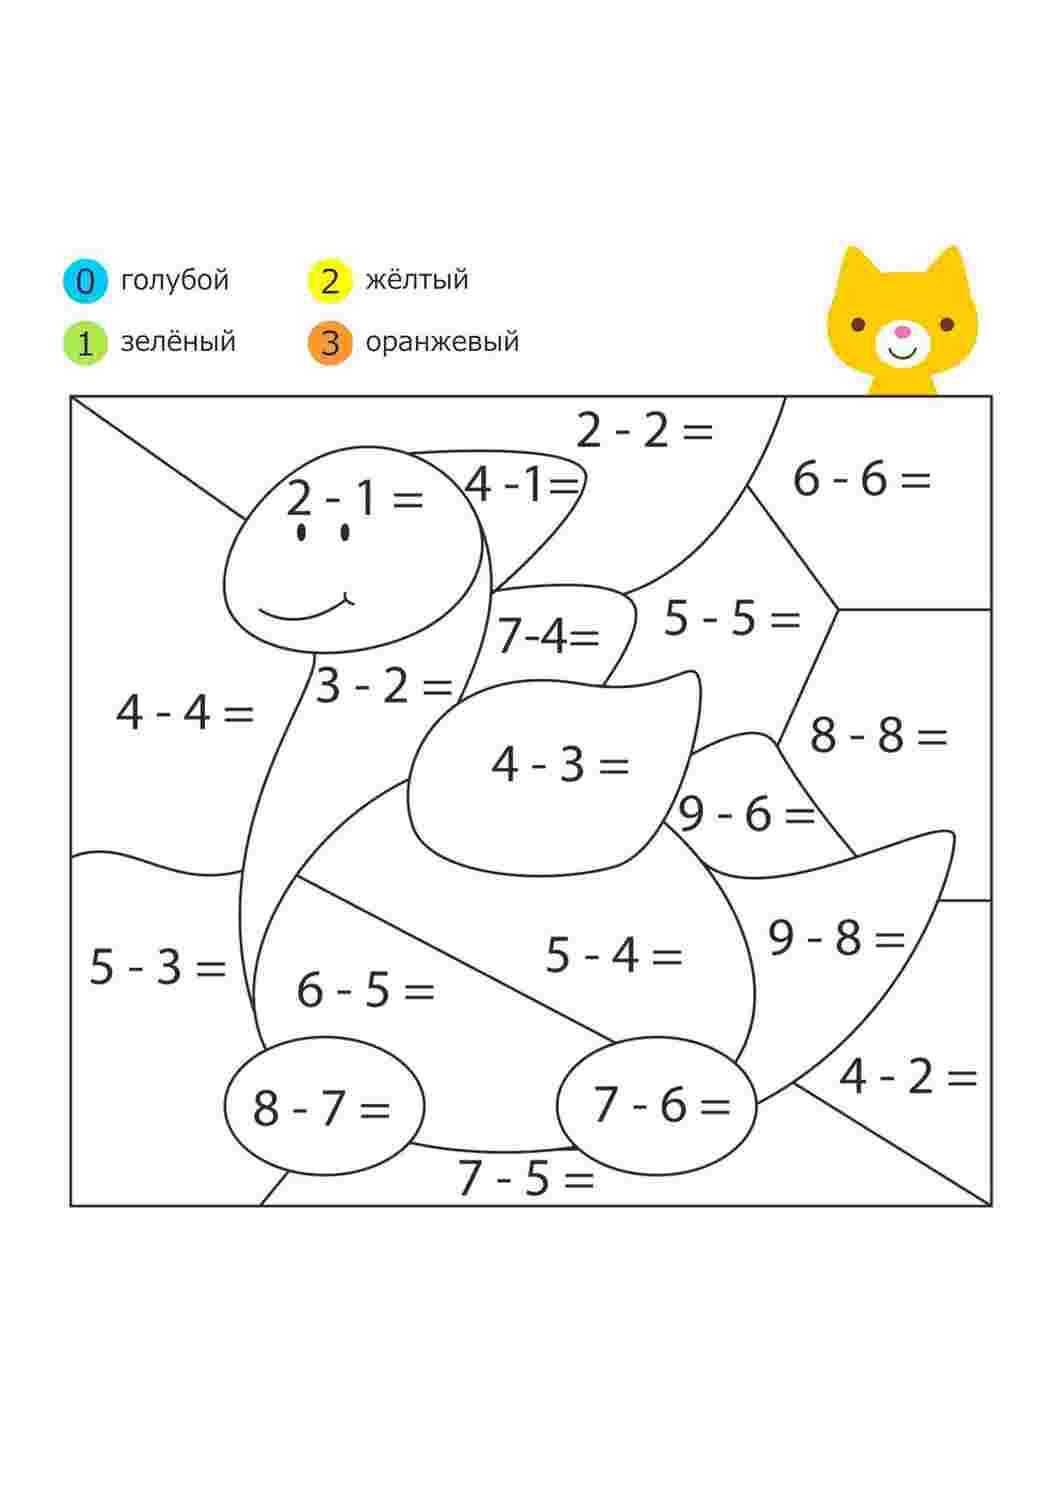 Раскраски Раскраски с животными. Раскрась животных по цифрам предварительно решив пример. Задания с примерами по математике. Учим математику в игровой форме. 